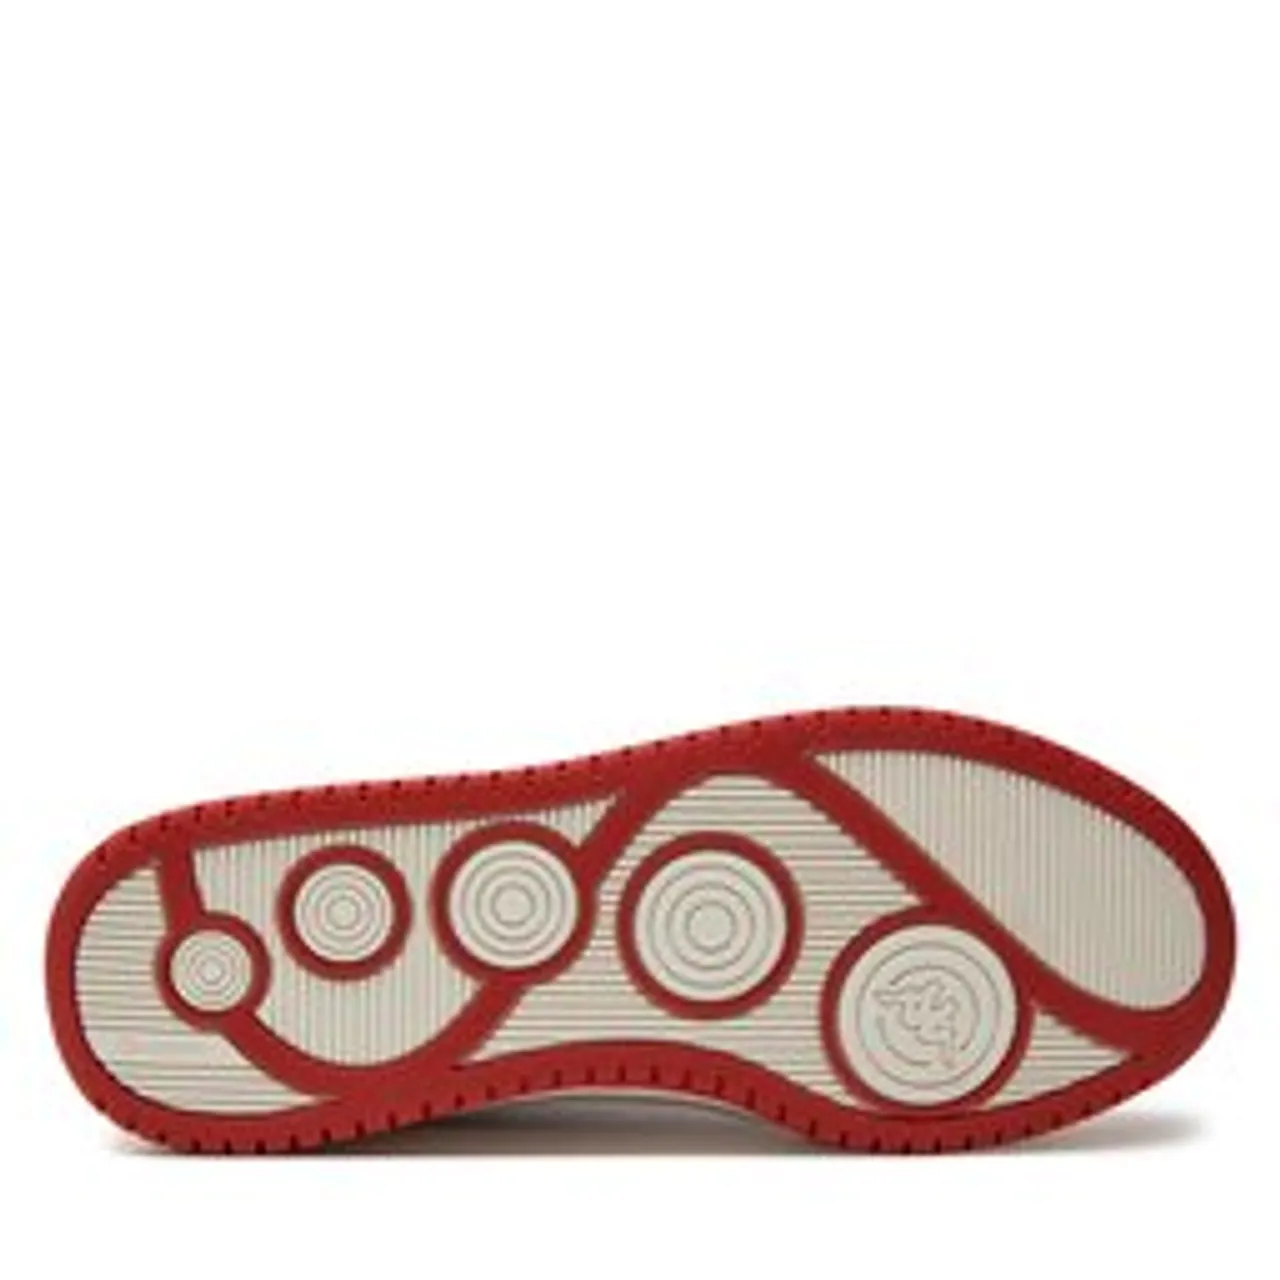 Sneakers Kappa 243326 Red/Black 2011